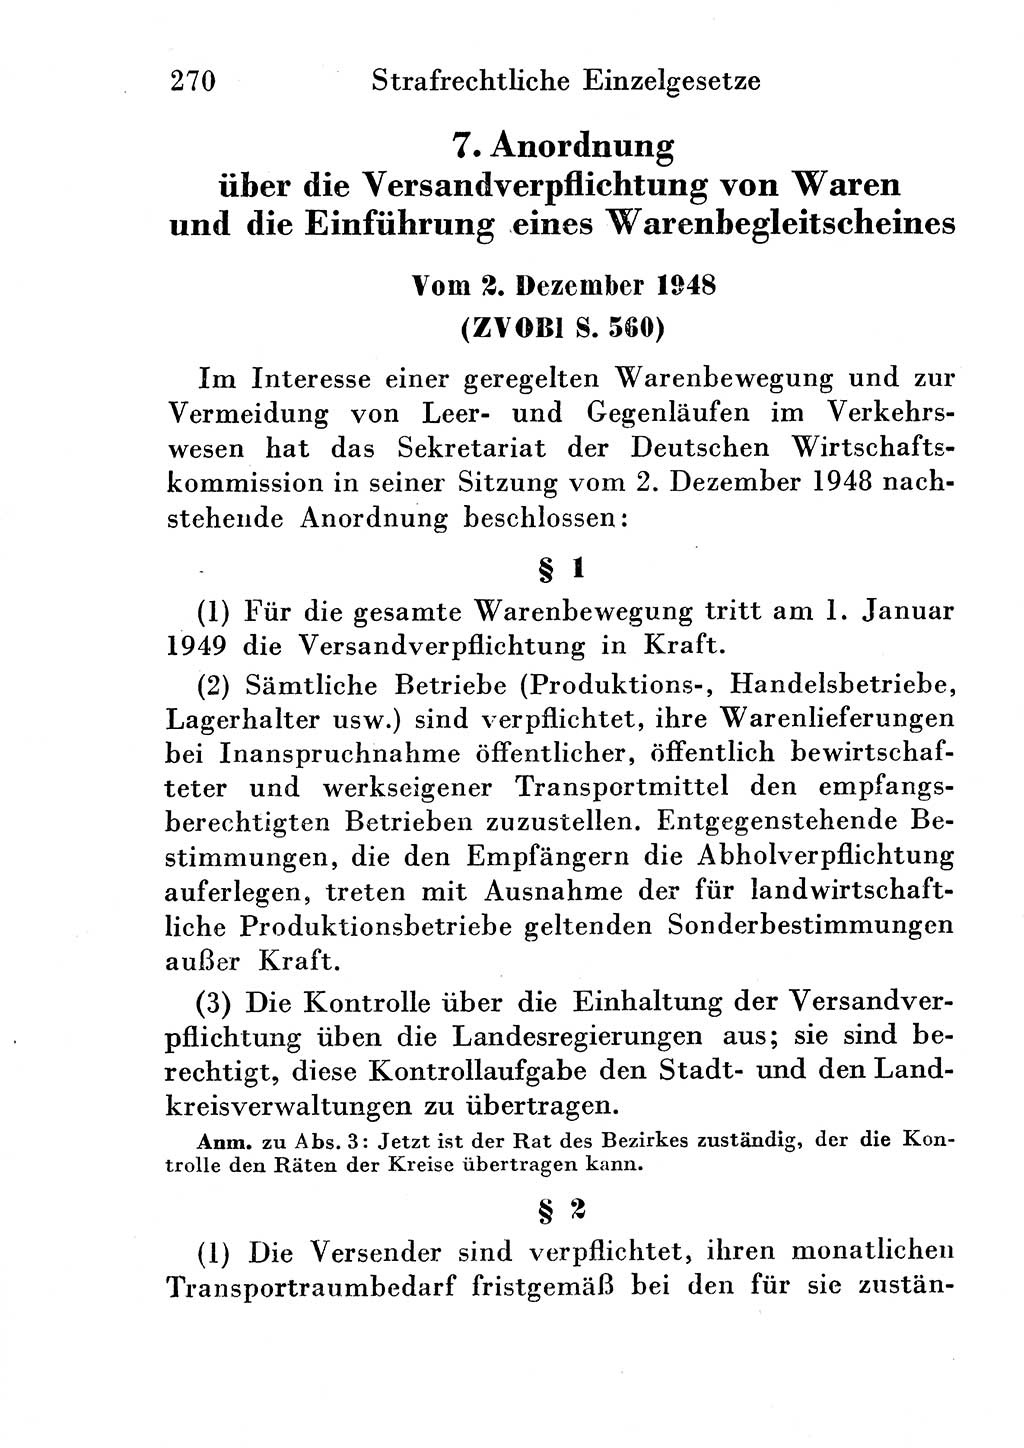 Strafgesetzbuch (StGB) und andere Strafgesetze [Deutsche Demokratische Republik (DDR)] 1954, Seite 270 (StGB Strafges. DDR 1954, S. 270)